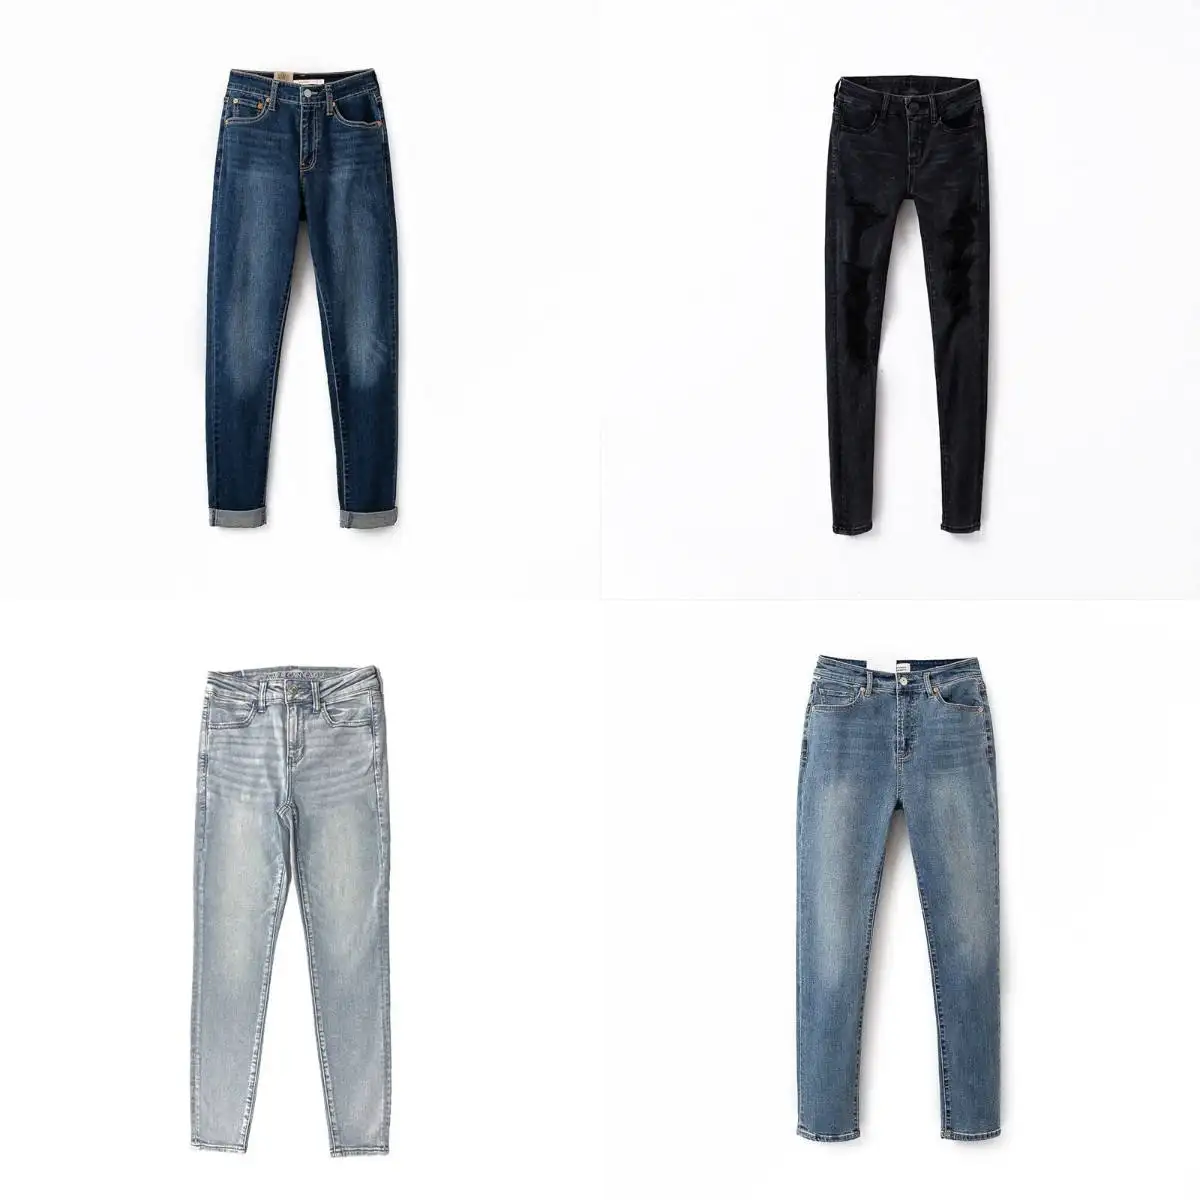 Großhandel Jean Kleider Denim Frauen Jeans für mich benutzer definierte Jeans jacke